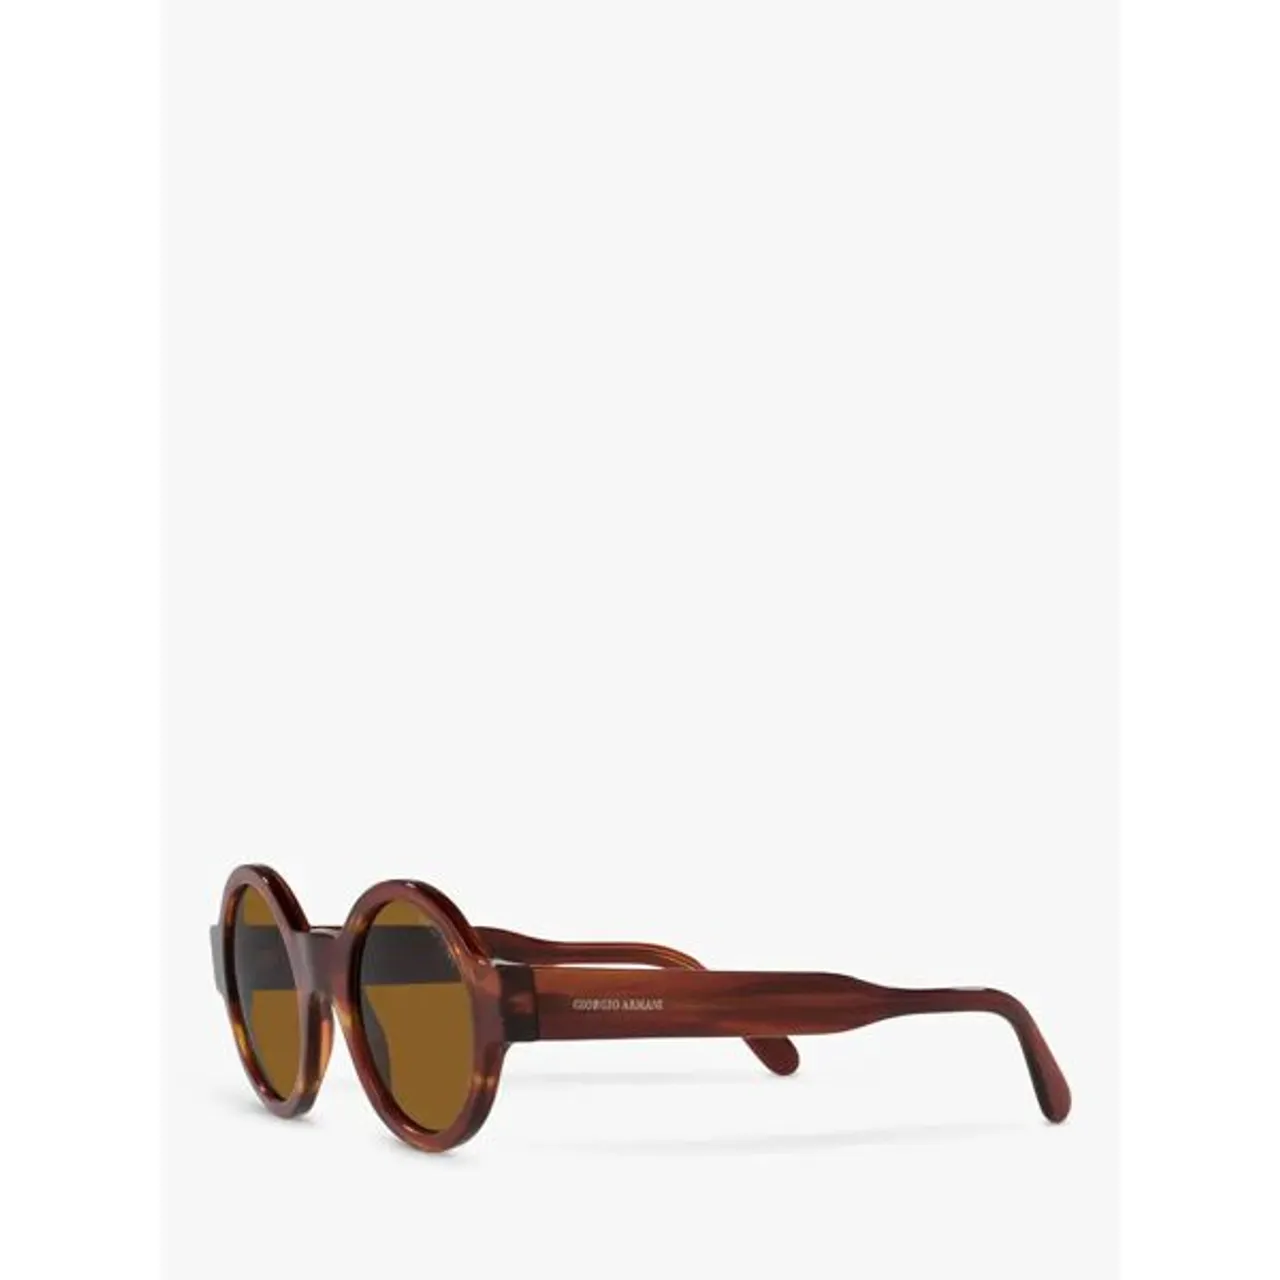 Giorgio Armani 903M Women's Round Sunglasses, Striped Havana/Brown - Striped Havana/Brown - Female